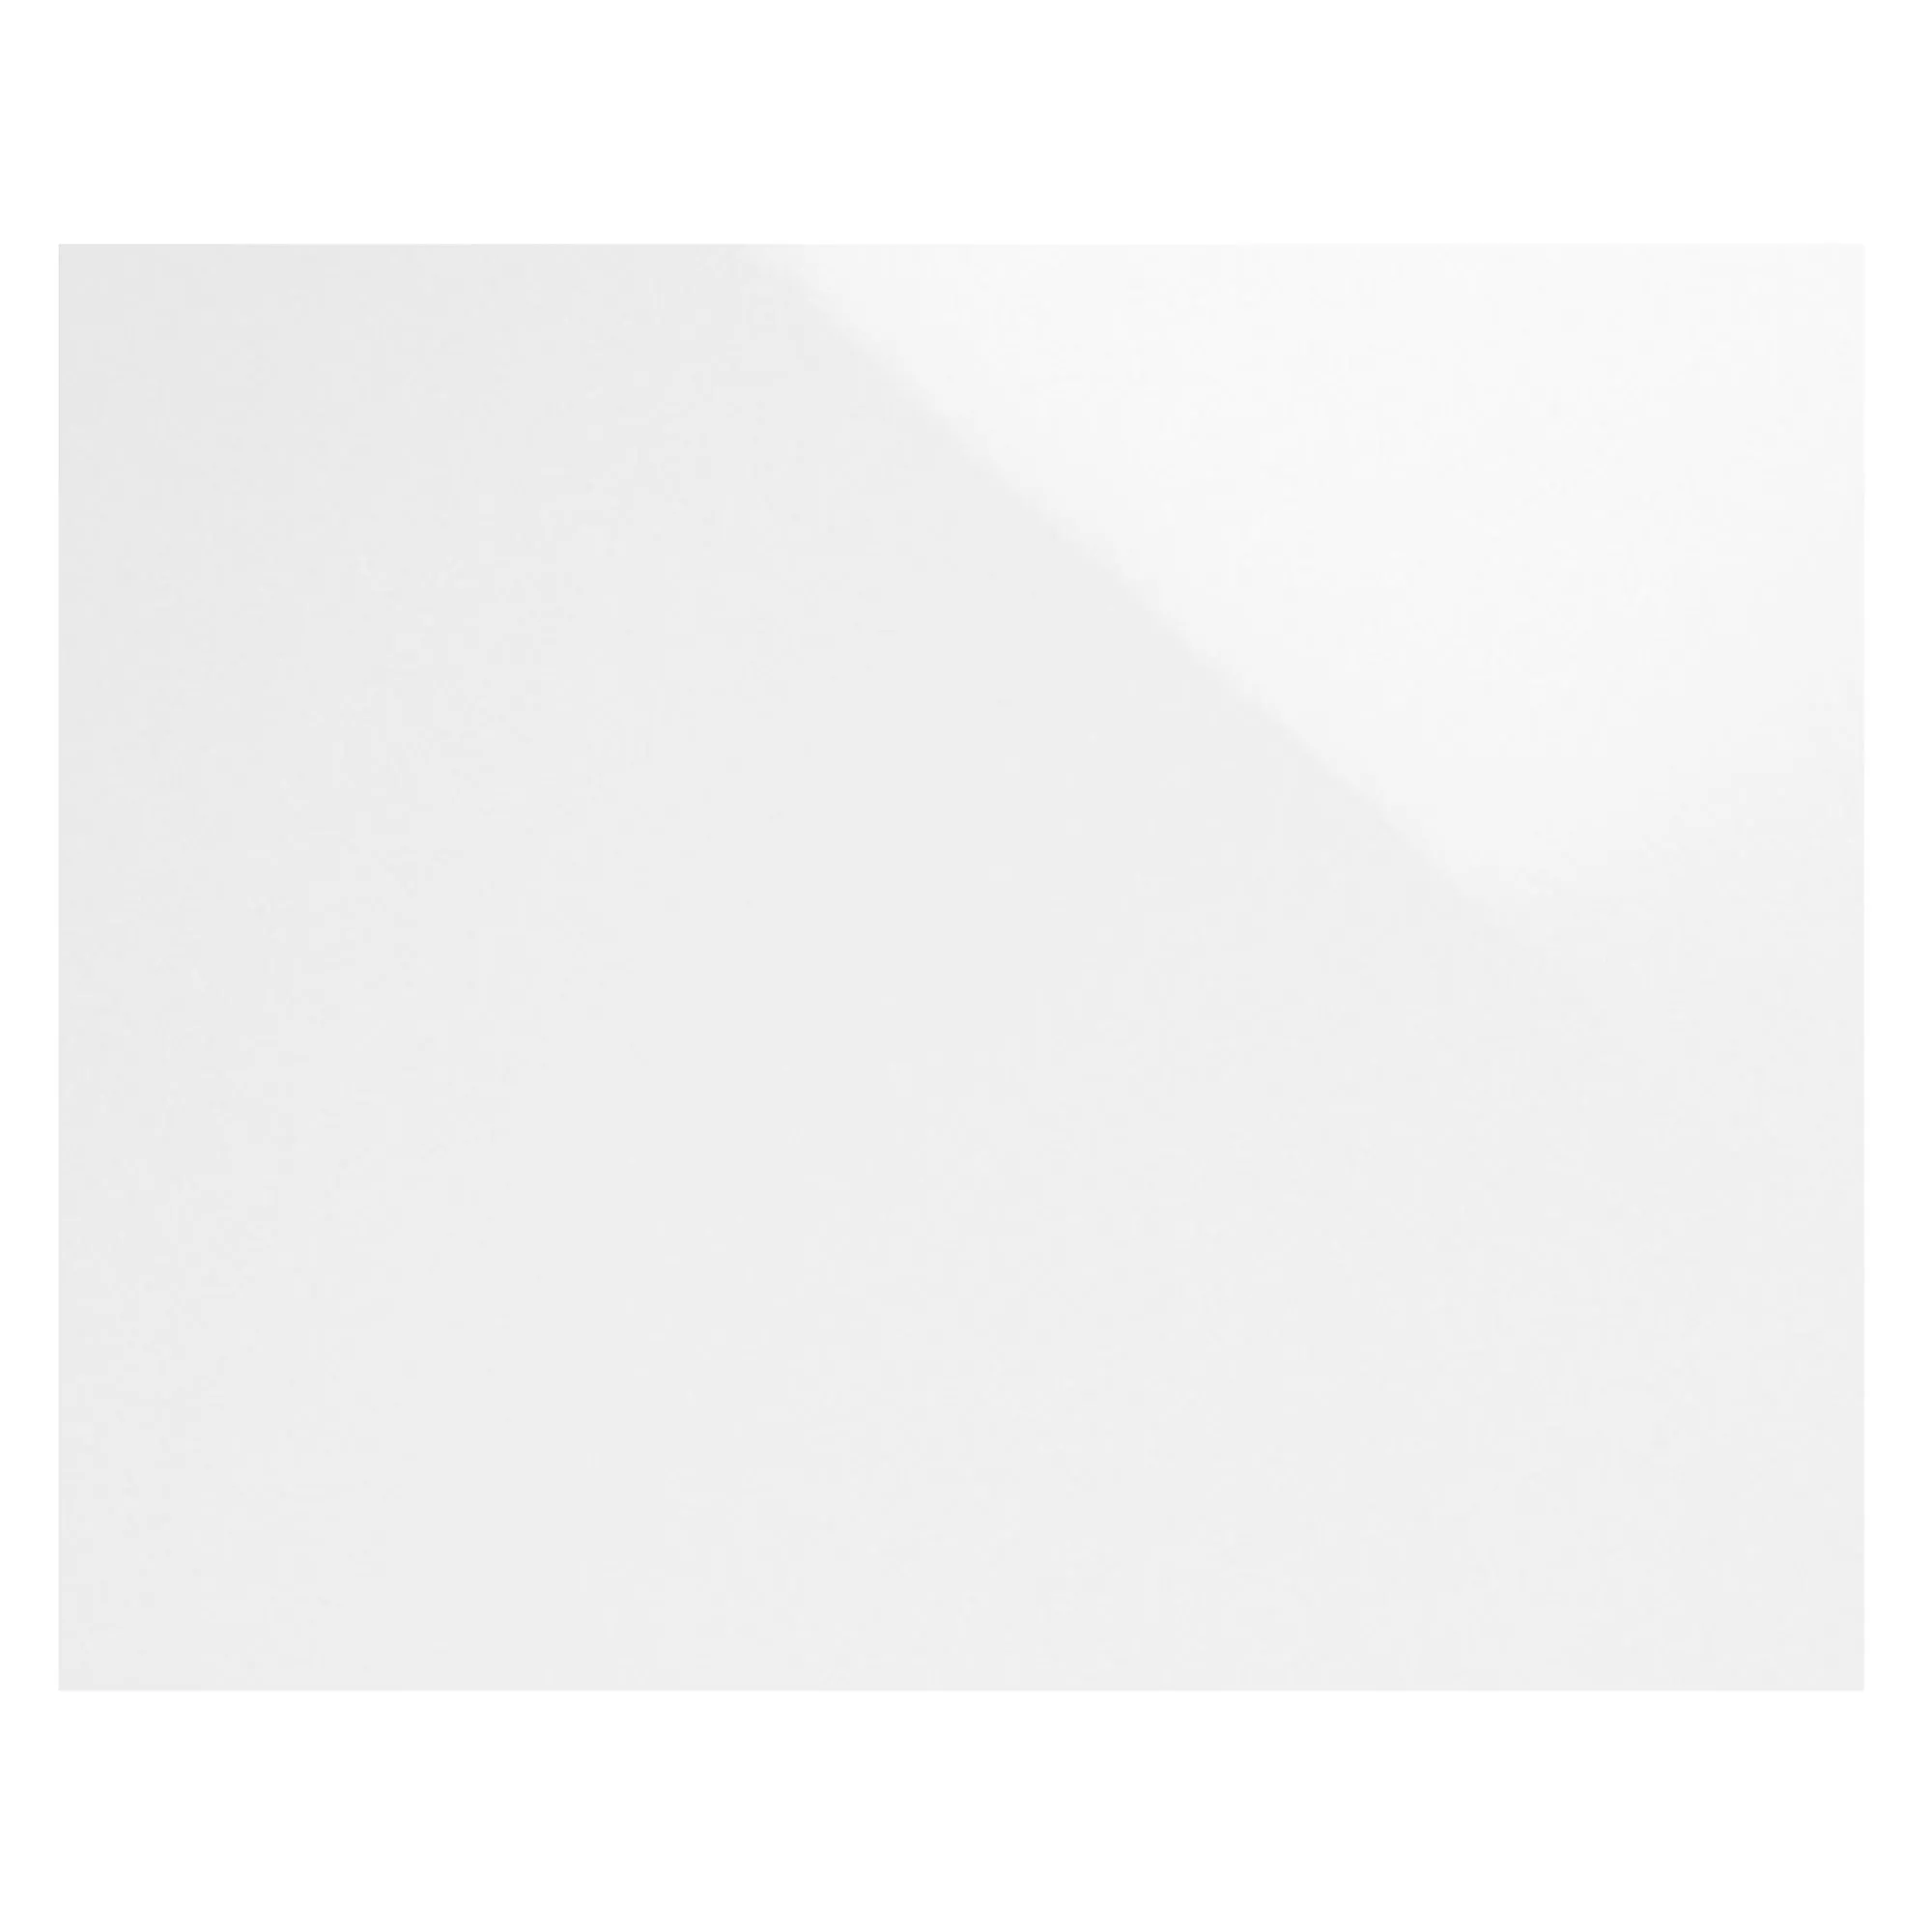 Próbka Płytki Ścienne Fenway Biały Błyszczący 20x40cm